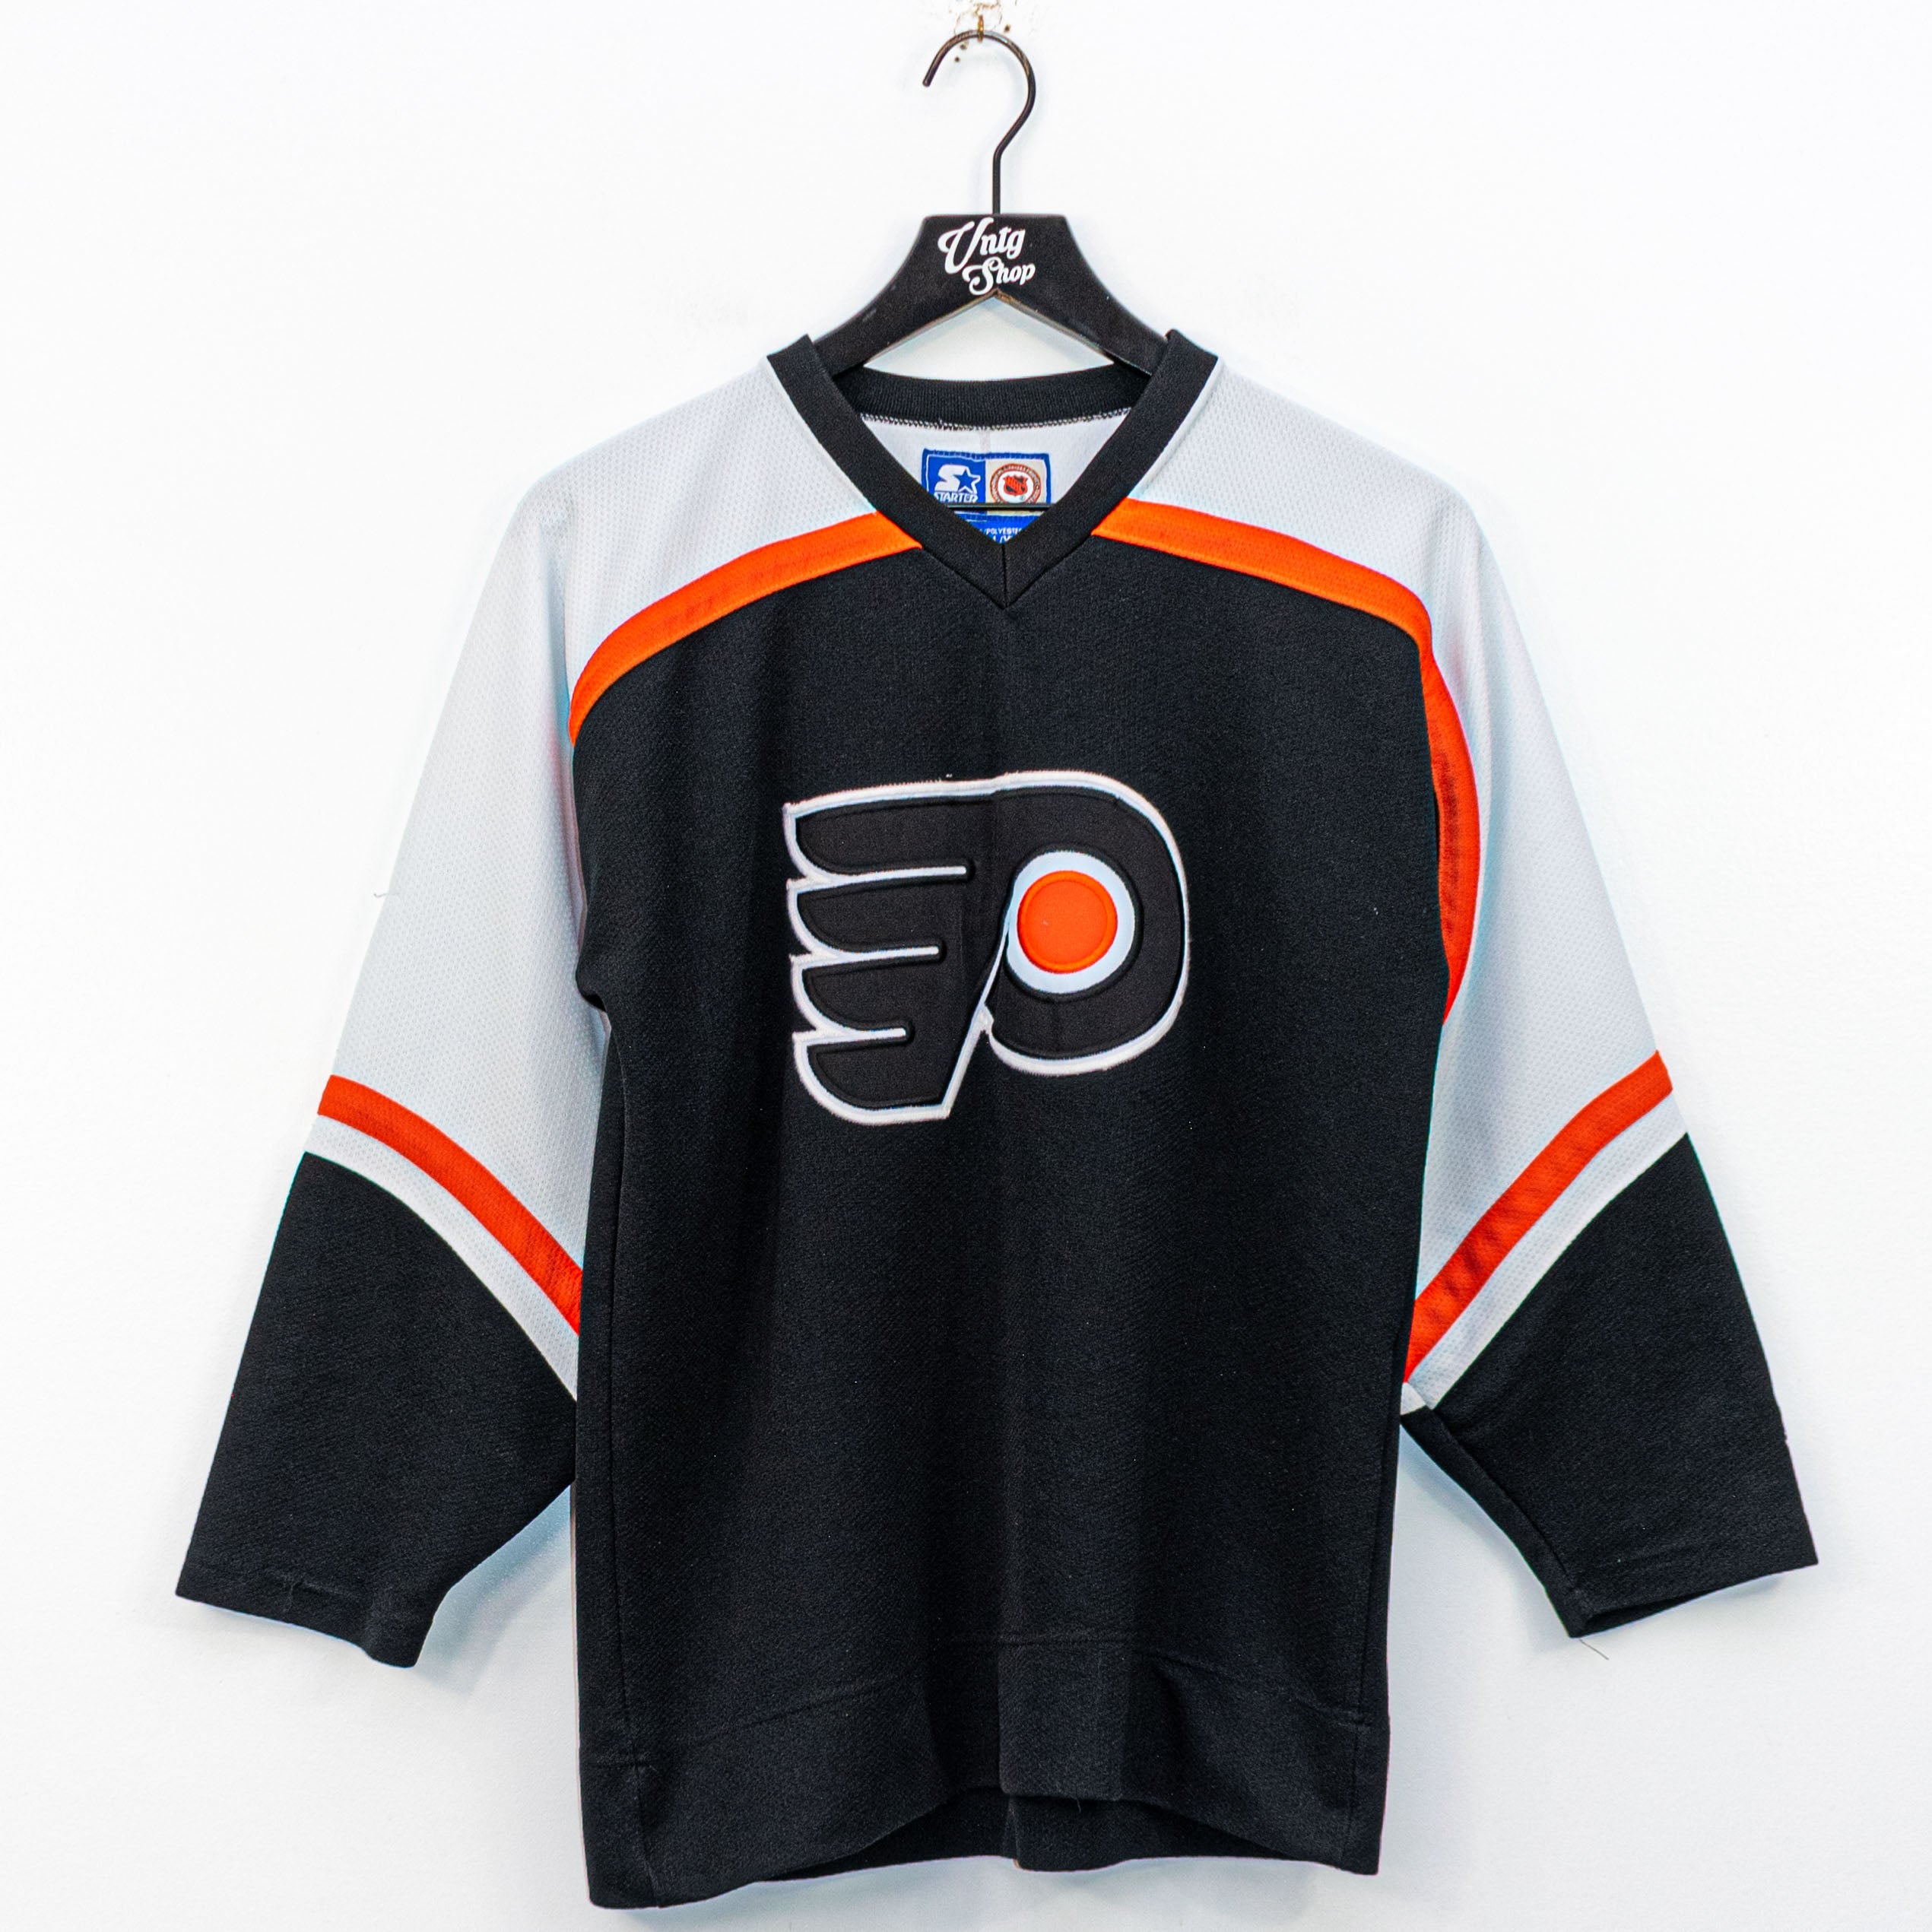 ) SALE!!! Vintage 90's Philadelphia Flyers NHL Starter Jersey